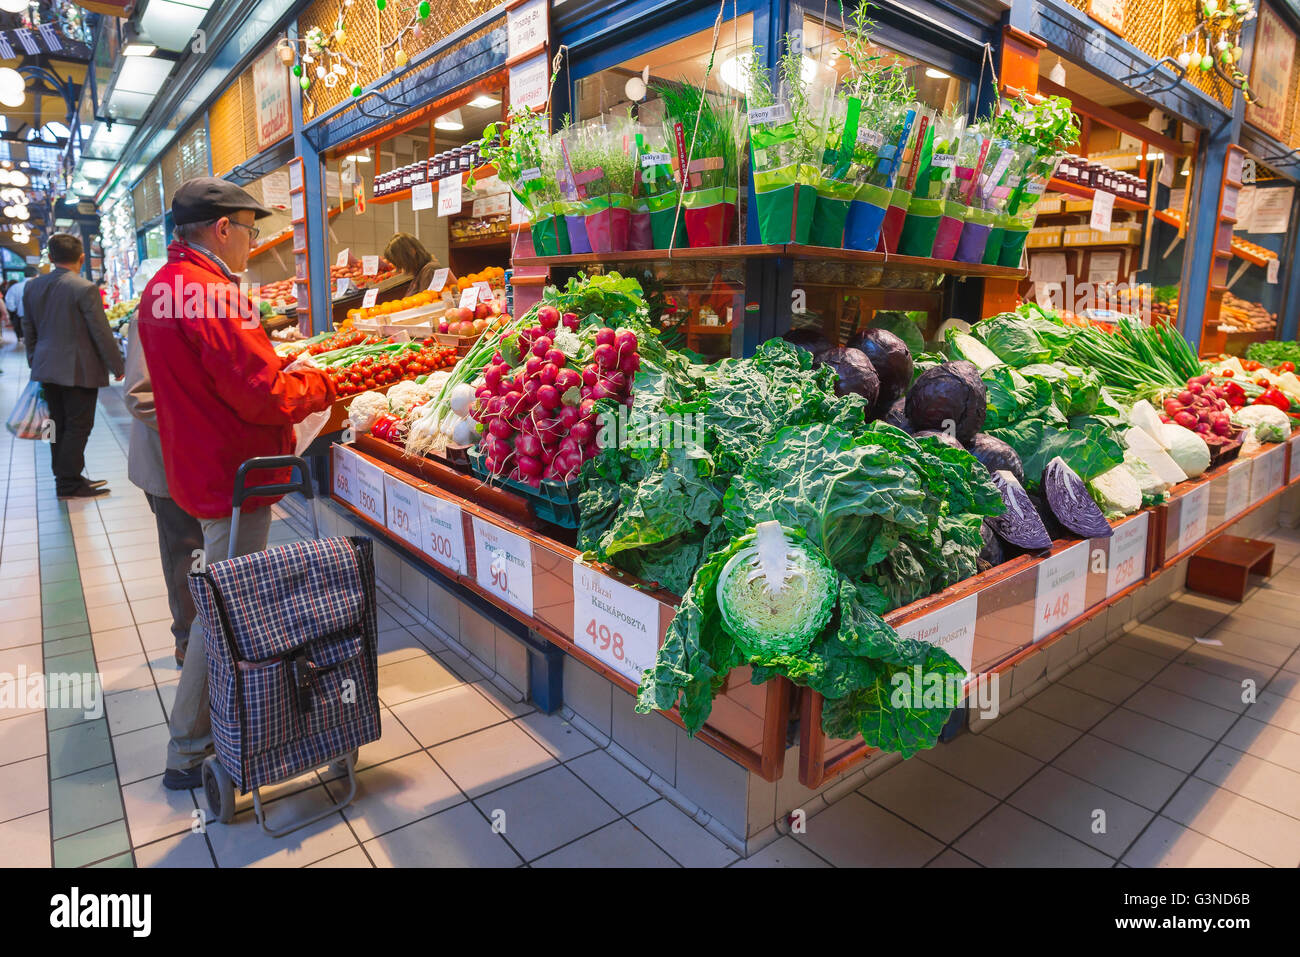 Marché alimentaire de Budapest, un homme achète des légumes à l'intérieur de la Grande Halle dans la région de Jozsefvaros de Budapest, Hongrie. Banque D'Images